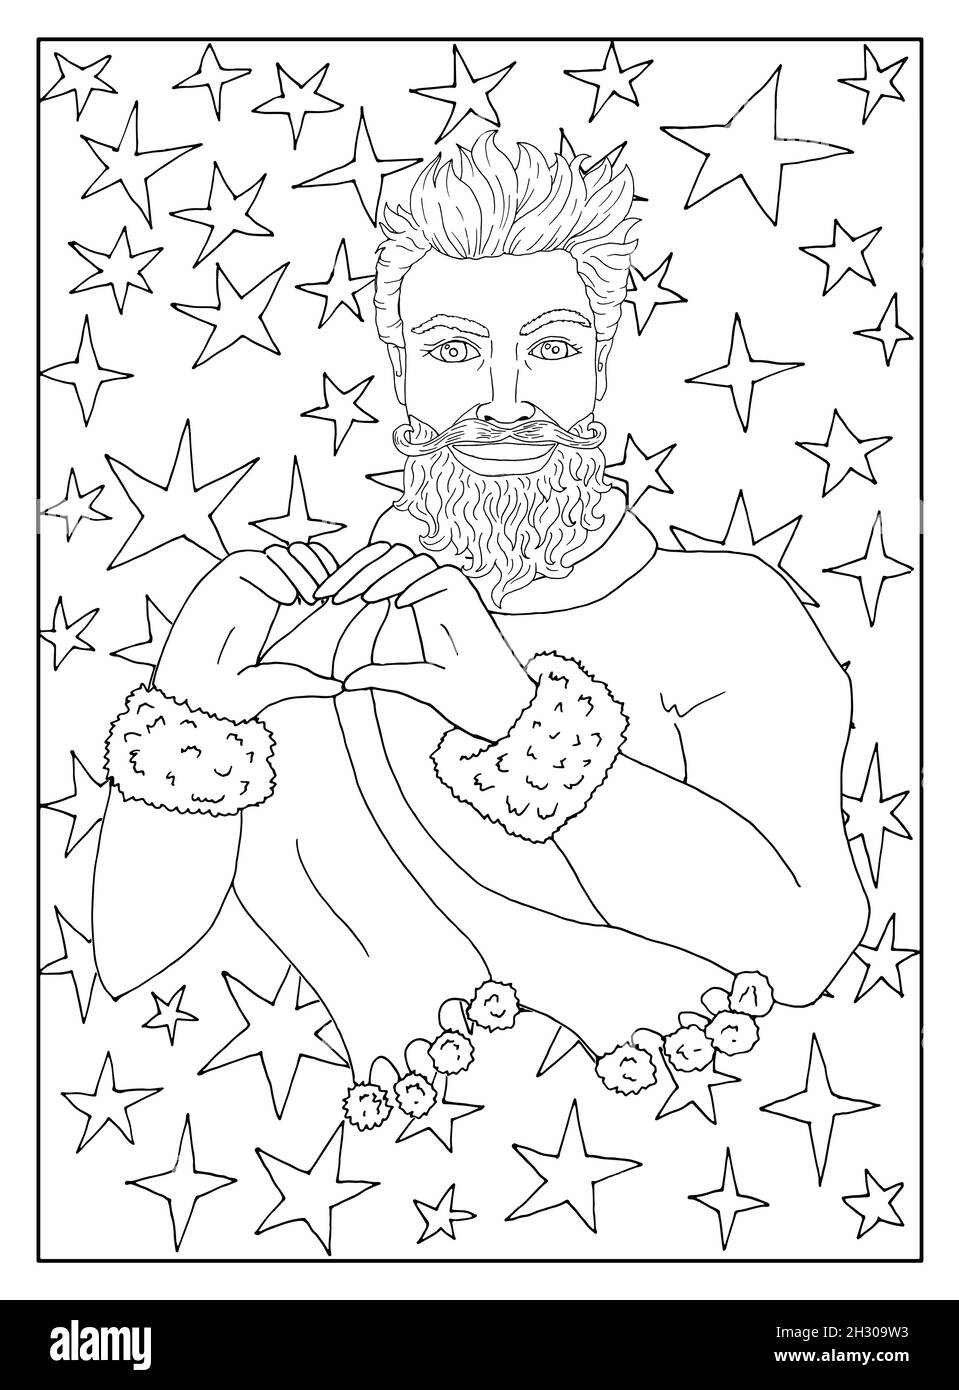 Schöner Weihnachtsmann zeigt Herz-Symbol vor Hintergrund mit Sternen. Schwarz-weiße Linie Kunst. Malseite. Vektorgrafik mit Weihnachten Stock Vektor